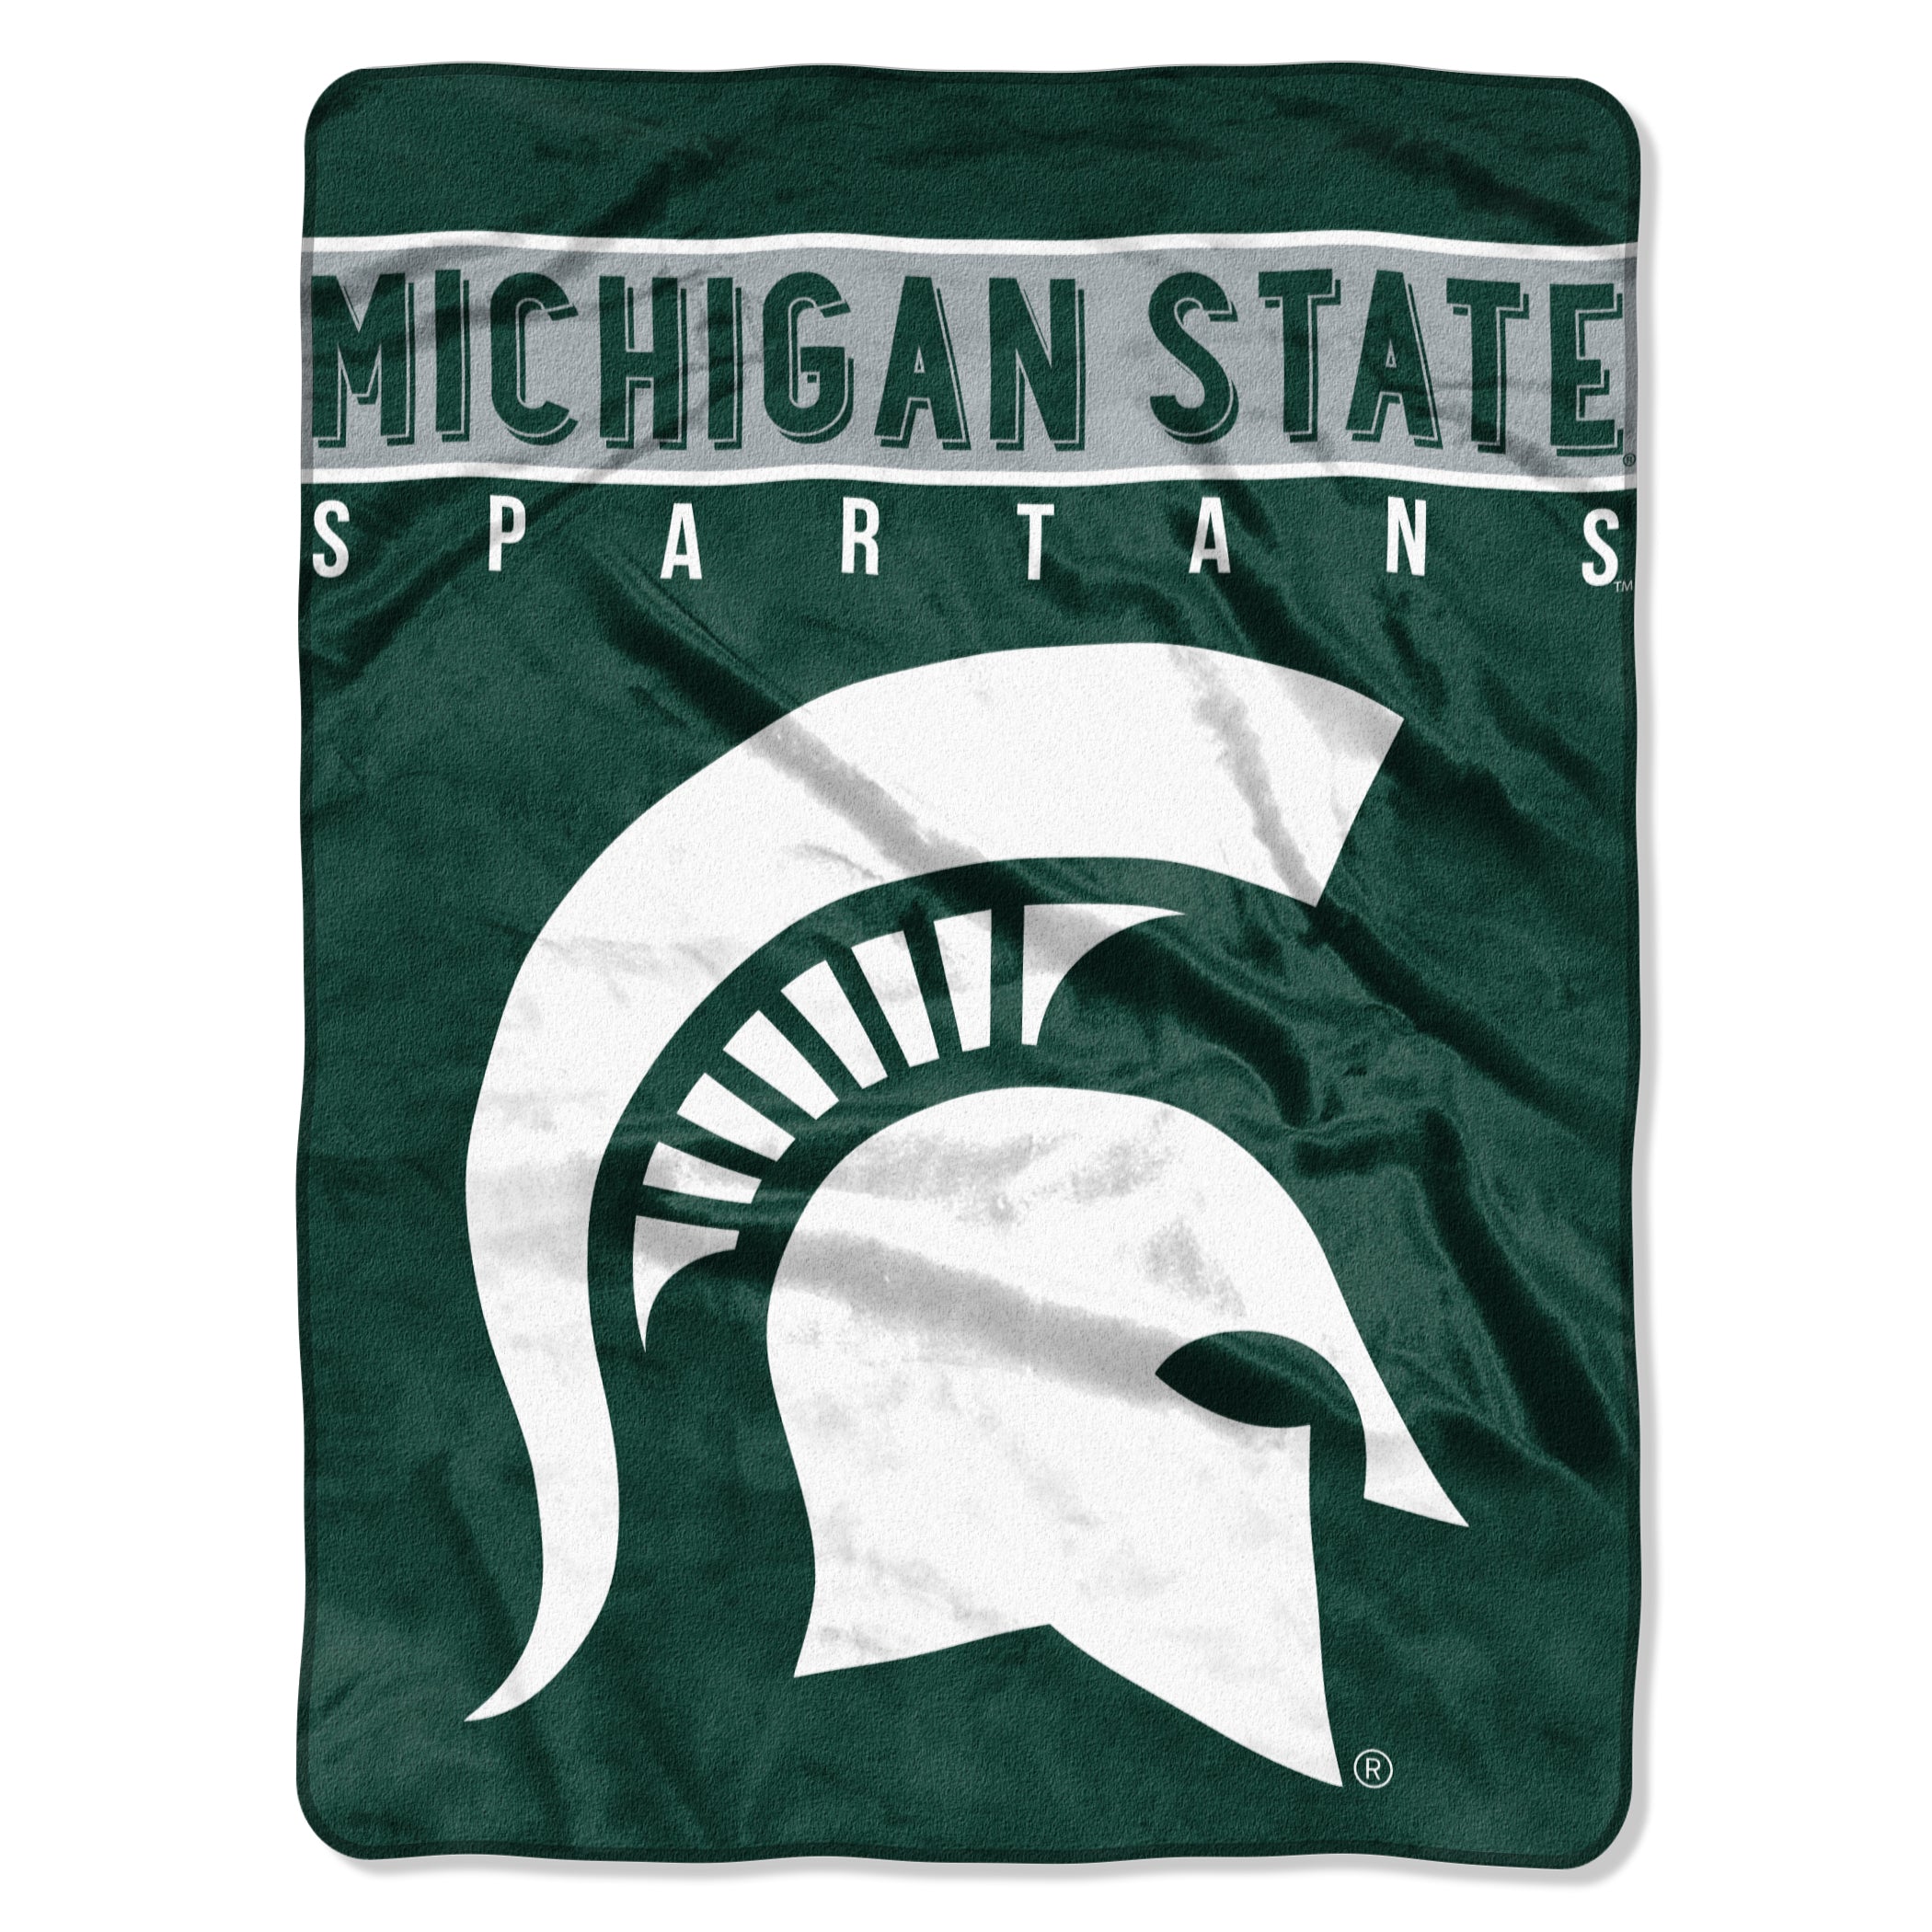 Michigan State Spartans Blanket 60x80 Raschel Basic Design